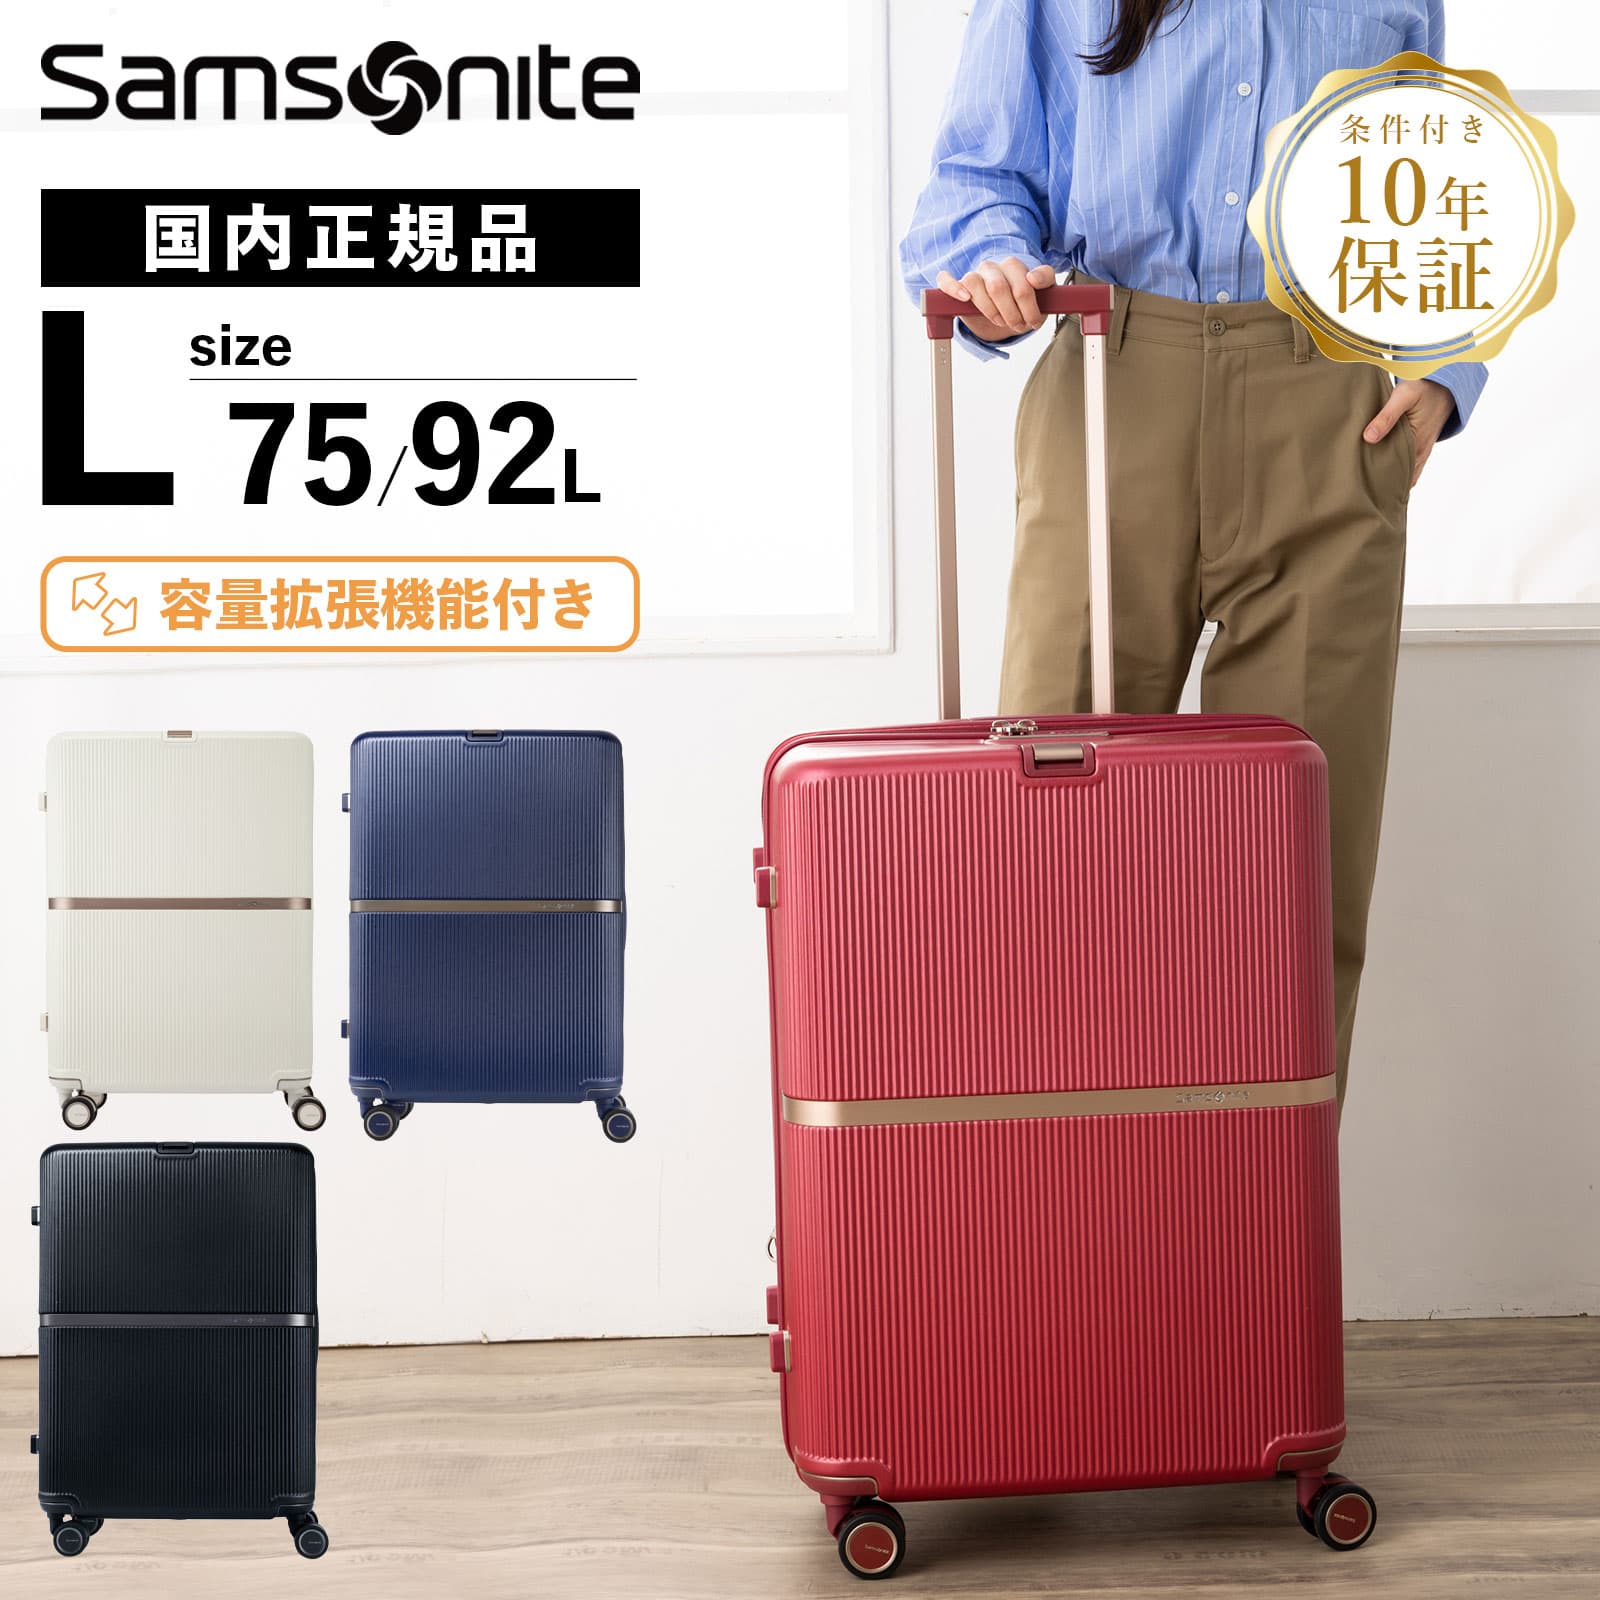 スーツケース サムソナイト Samsonite (MINTER・ミンター